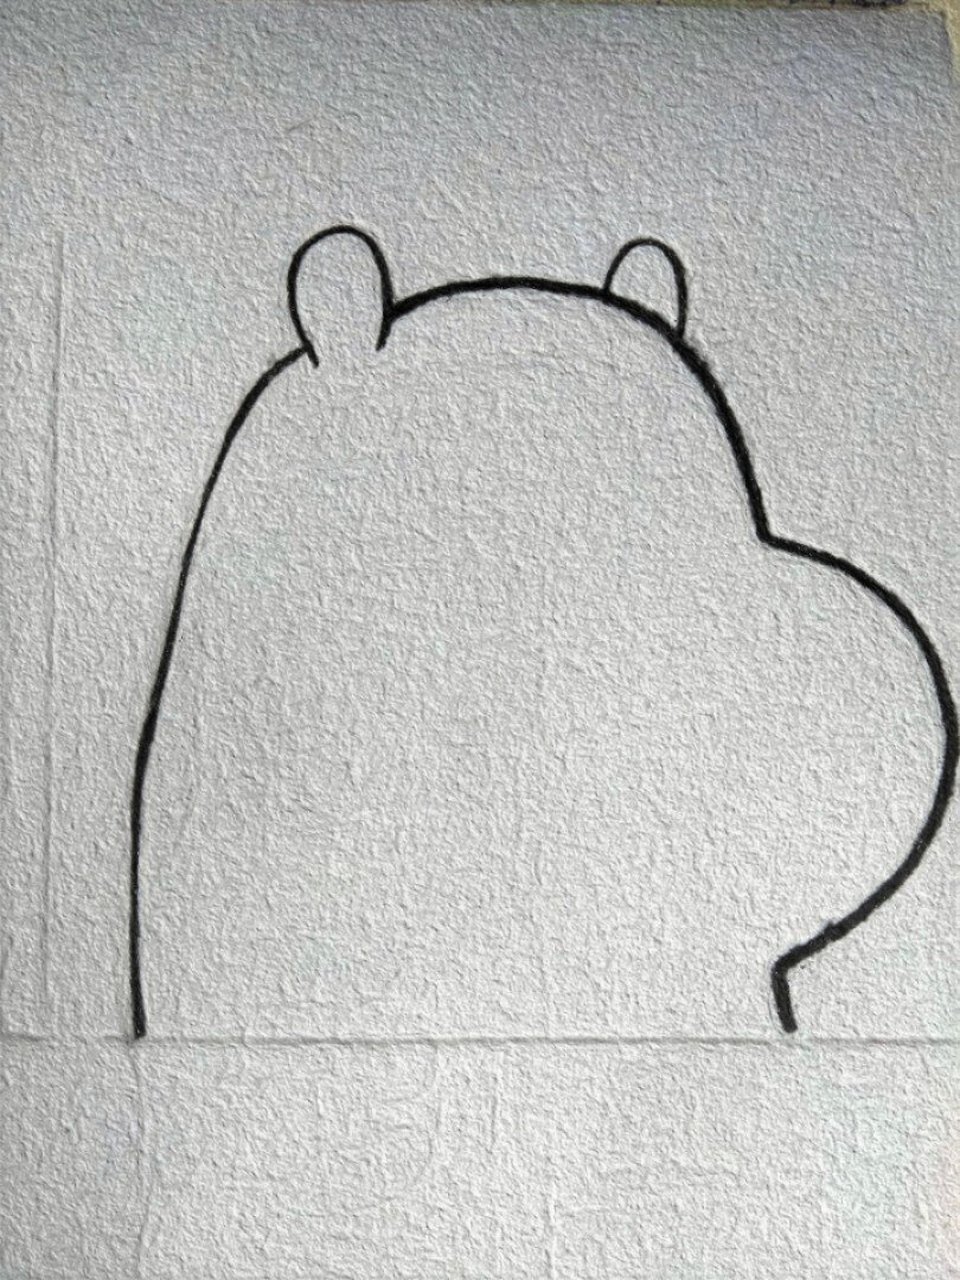 简笔画教程 ——憨憨的白熊